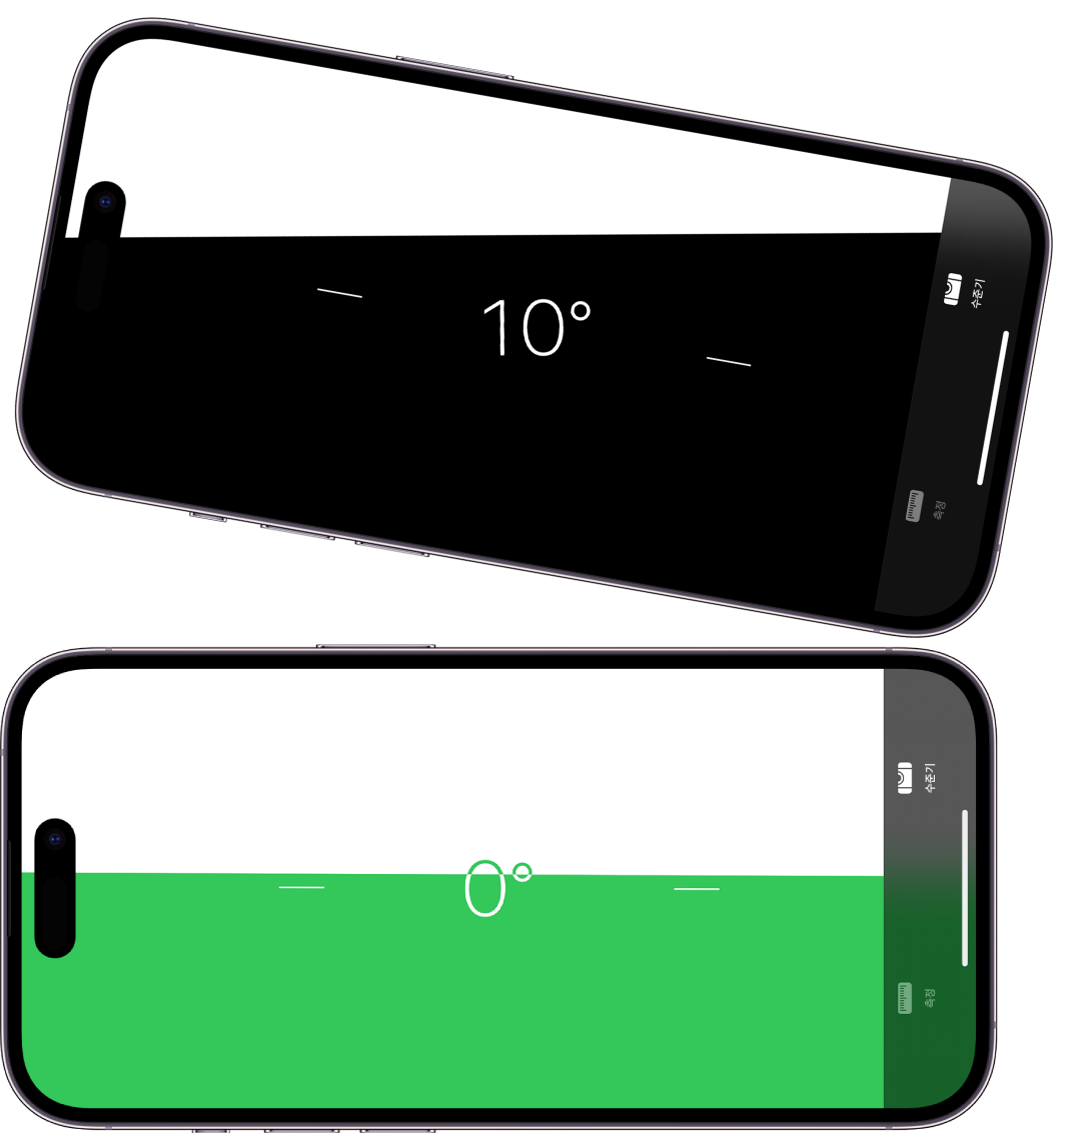 측정 앱의 수준기 화면. 위에는 iPhone이 10도의 각도로 기울어져 있고, 아래에는 iPhone이 평평함.